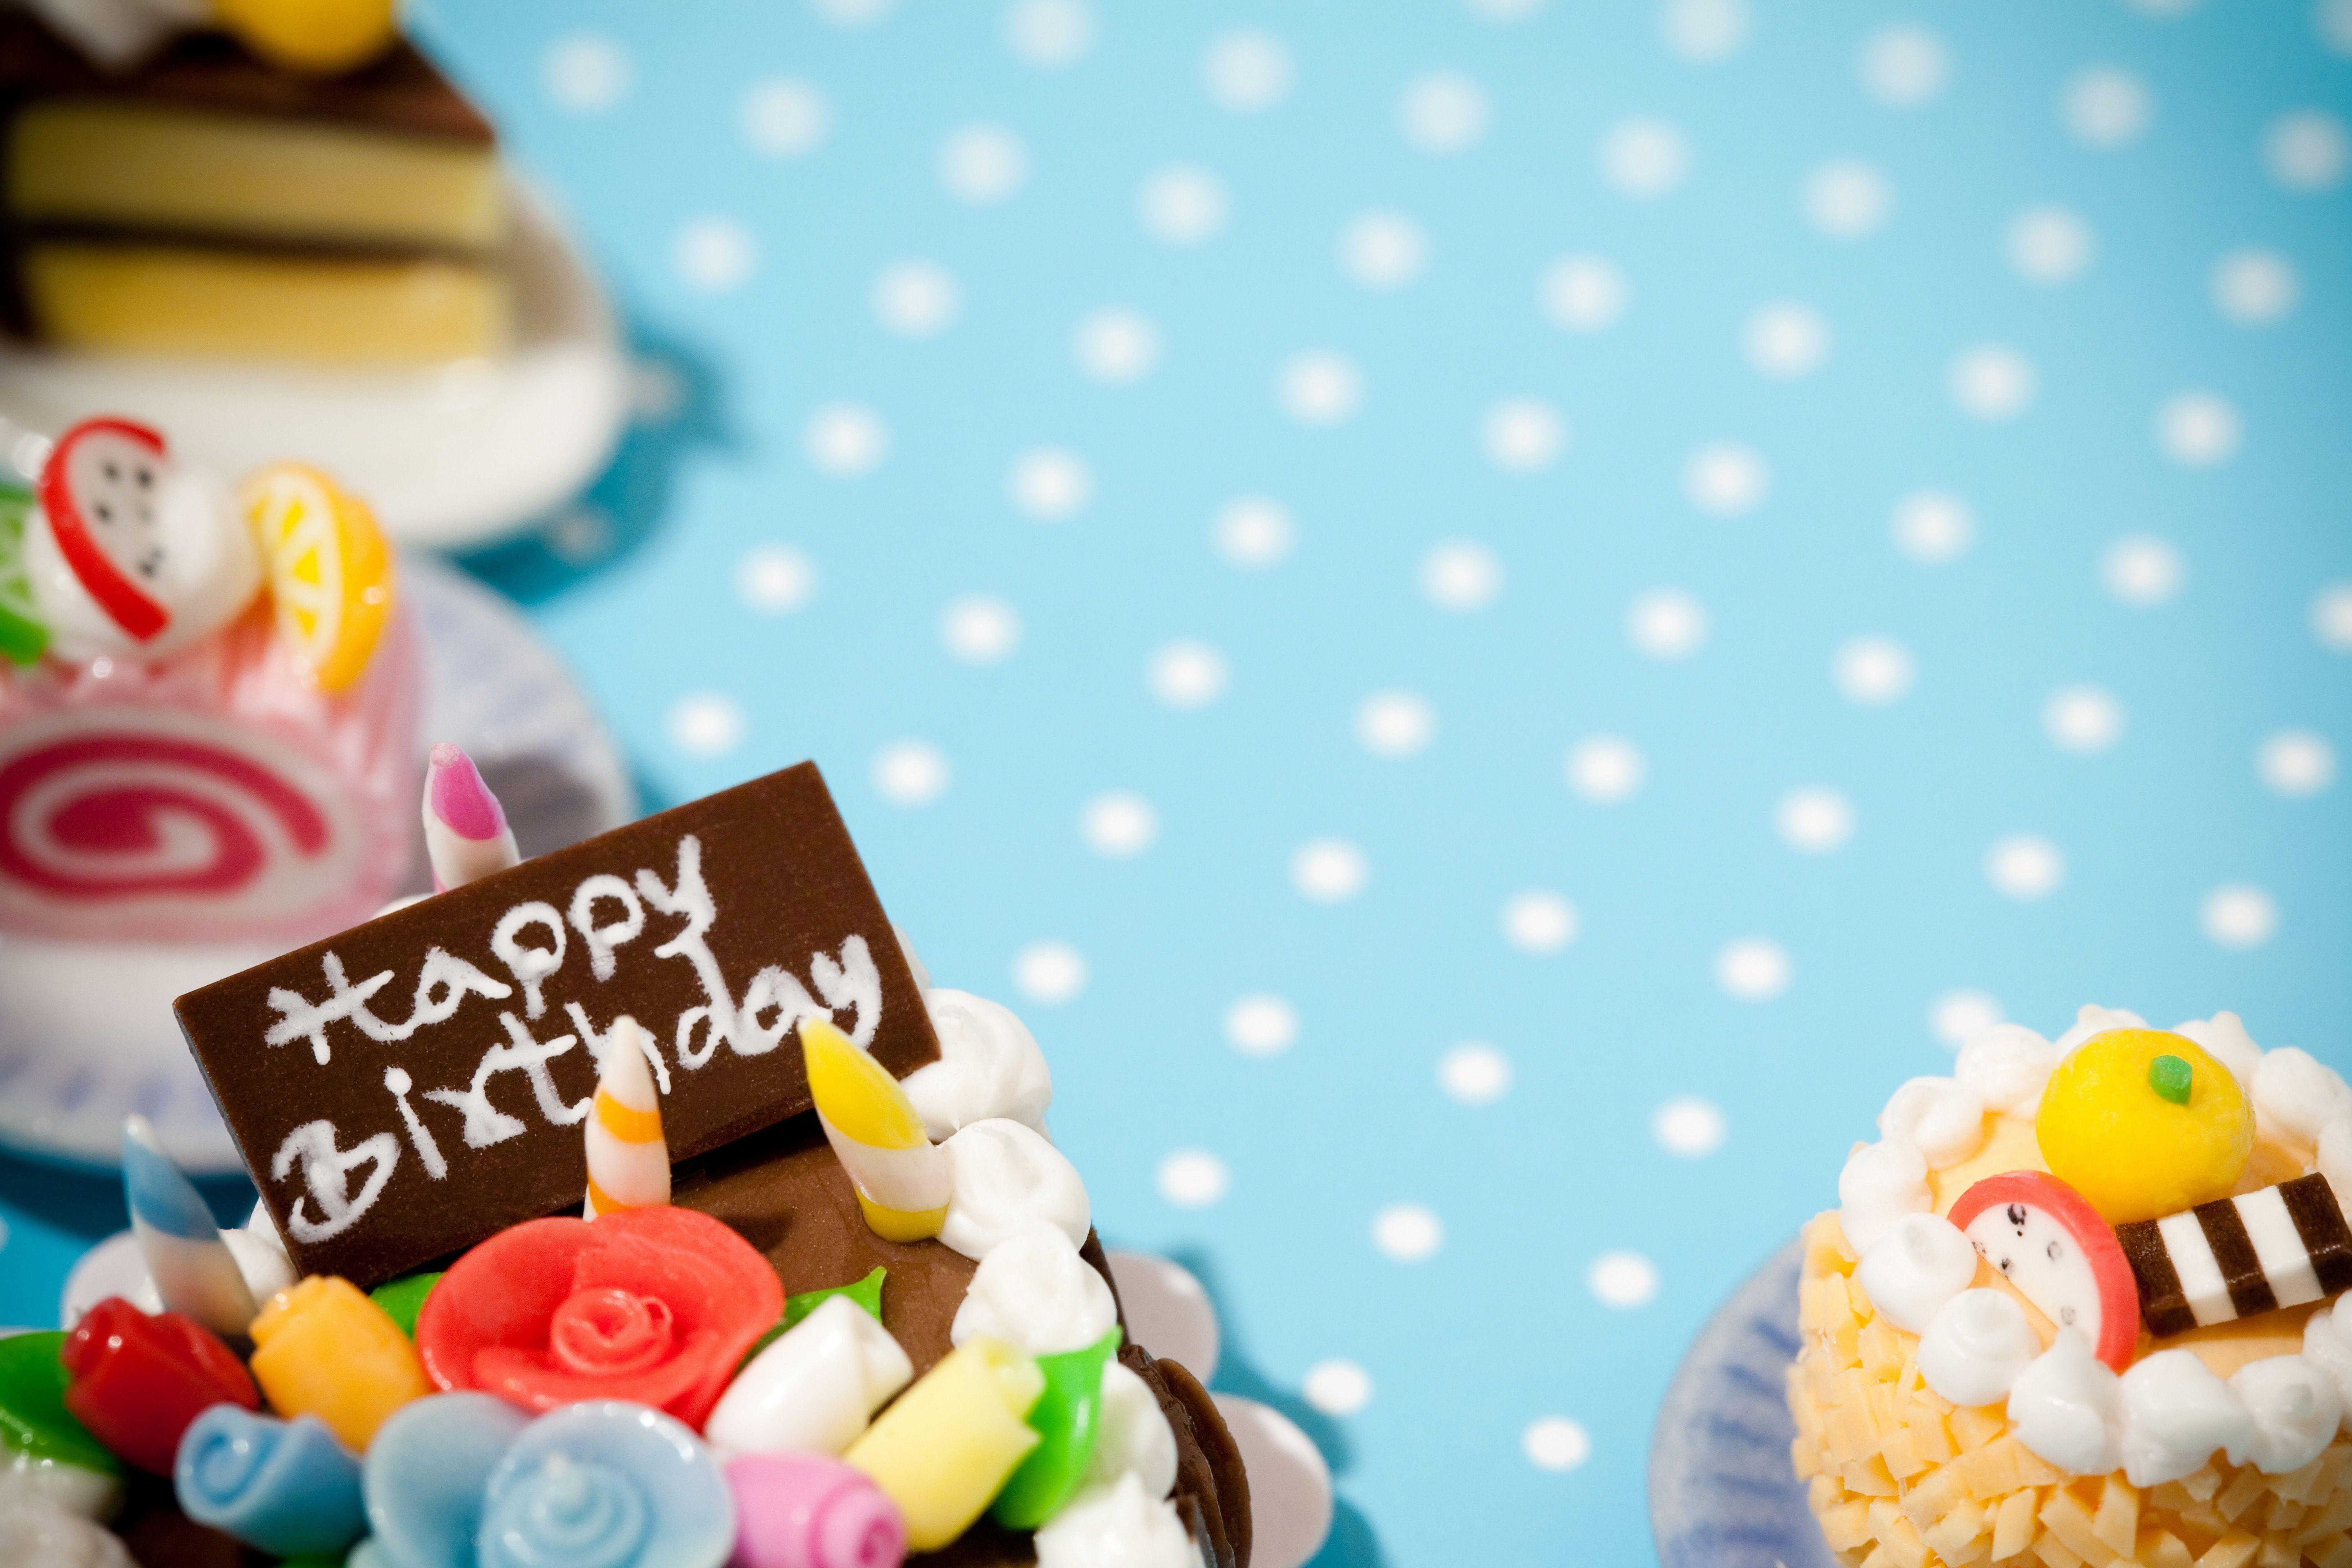 Đánh dấu một ngày đặc biệt với hình nền bánh sinh nhật yêu thích của bạn. Với nhiều màu sắc và họa tiết trực quan, bạn sẽ nhận ra sự đặc biệt trong ngày sinh nhật. Hình nền sinh nhật là một điểm nhấn đẹp mắt cho buổi tiệc sinh nhật của bạn.